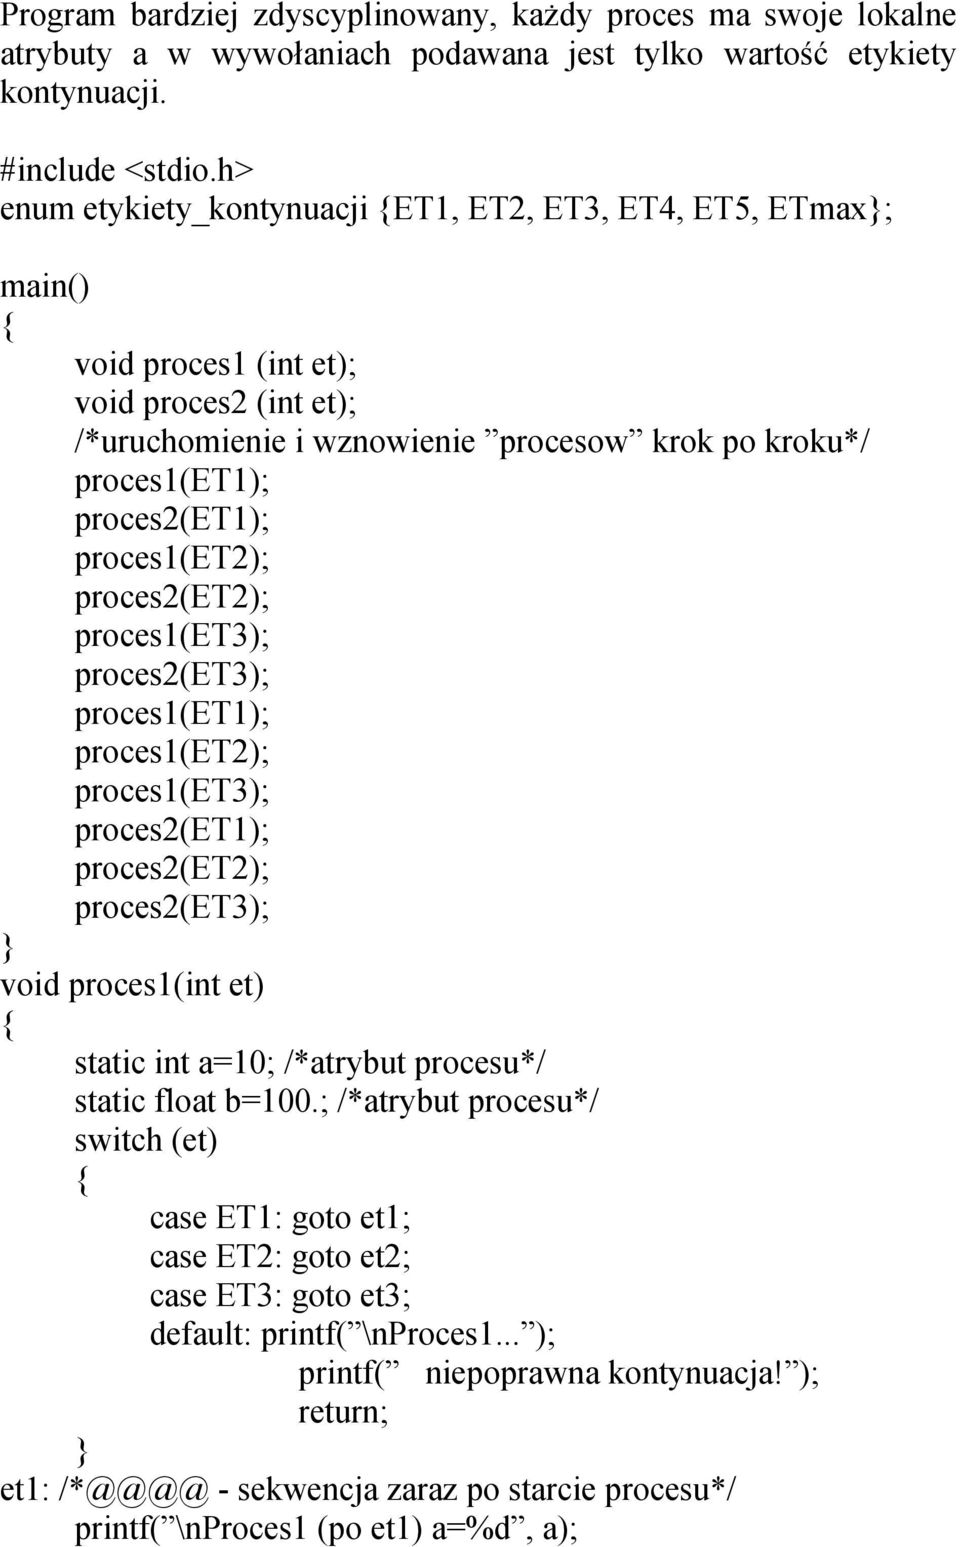 proces1(et2); proces2(et2); proces1(et3); proces2(et3); proces1(et1); proces1(et2); proces1(et3); proces2(et1); proces2(et2); proces2(et3); void proces1(int et) static int a=10; /*atrybut procesu*/